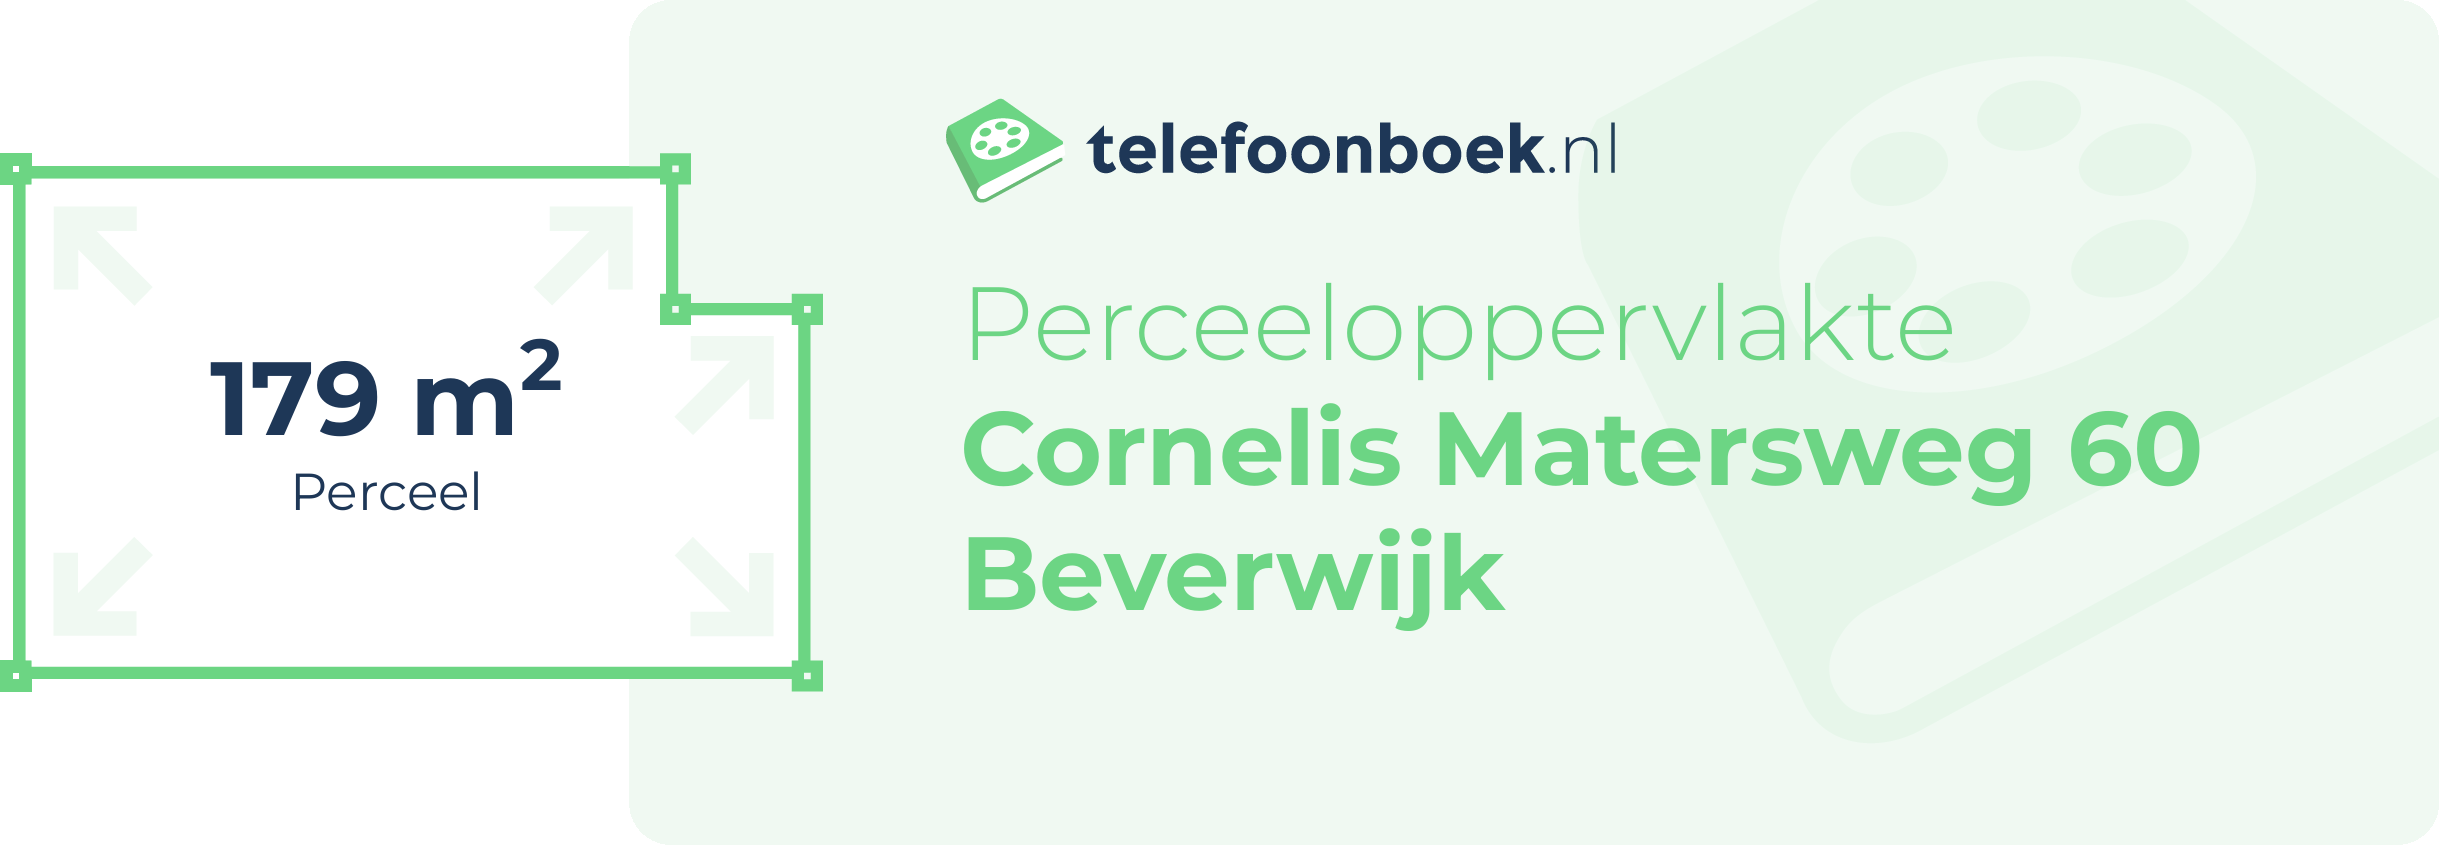 Perceeloppervlakte Cornelis Matersweg 60 Beverwijk